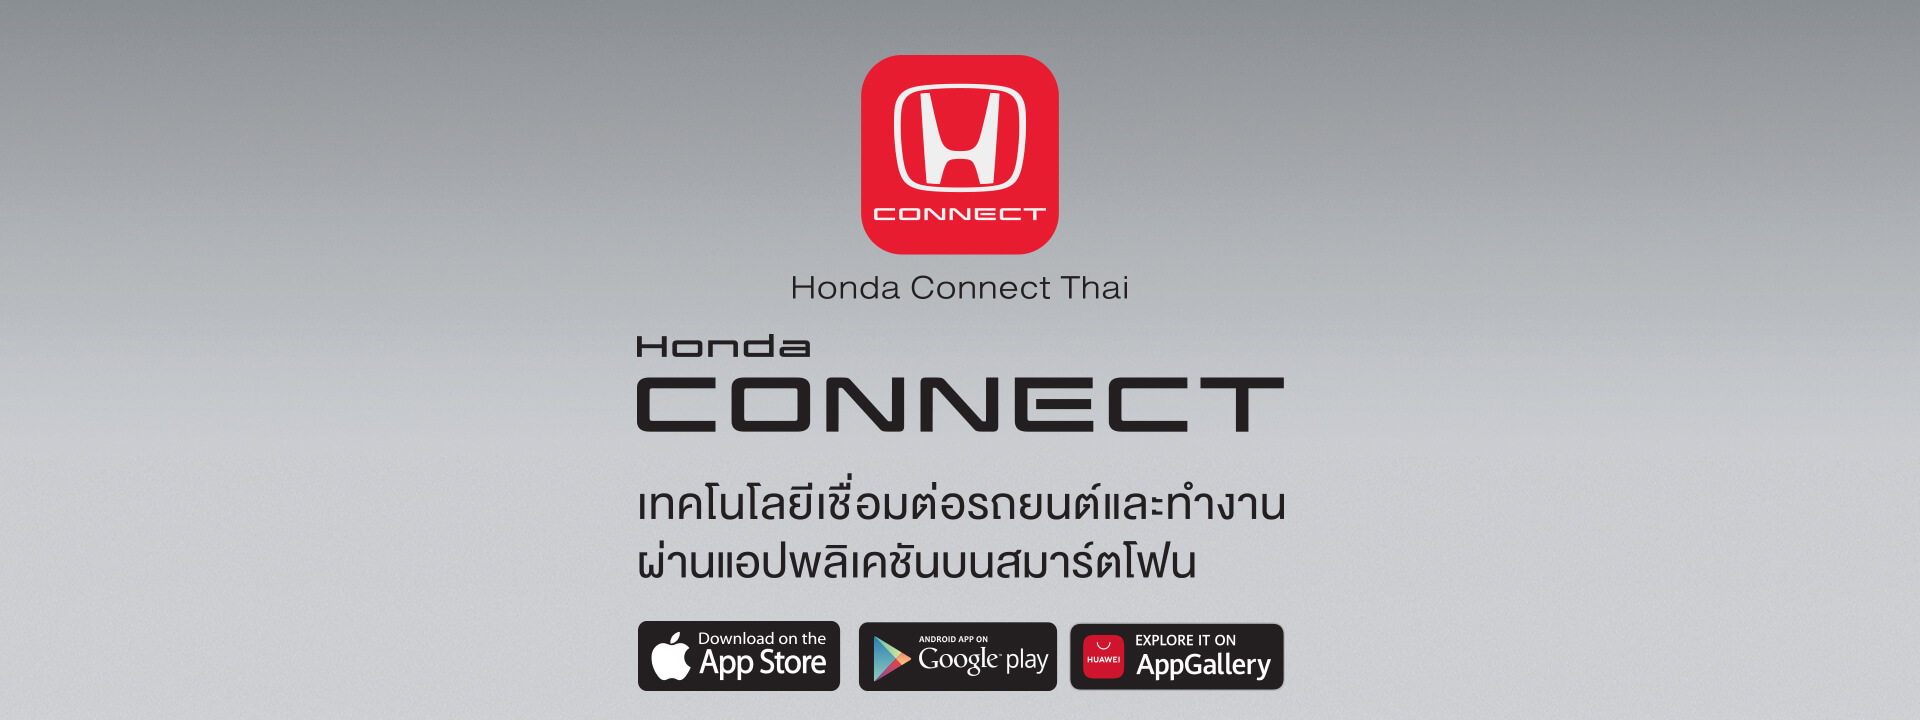 Honda CONNECT เทคโนโลยีเชื่อมต่อรถยนต์ และทำงานผ่านแอปพลิเคชันบนสมาร์ทโฟน